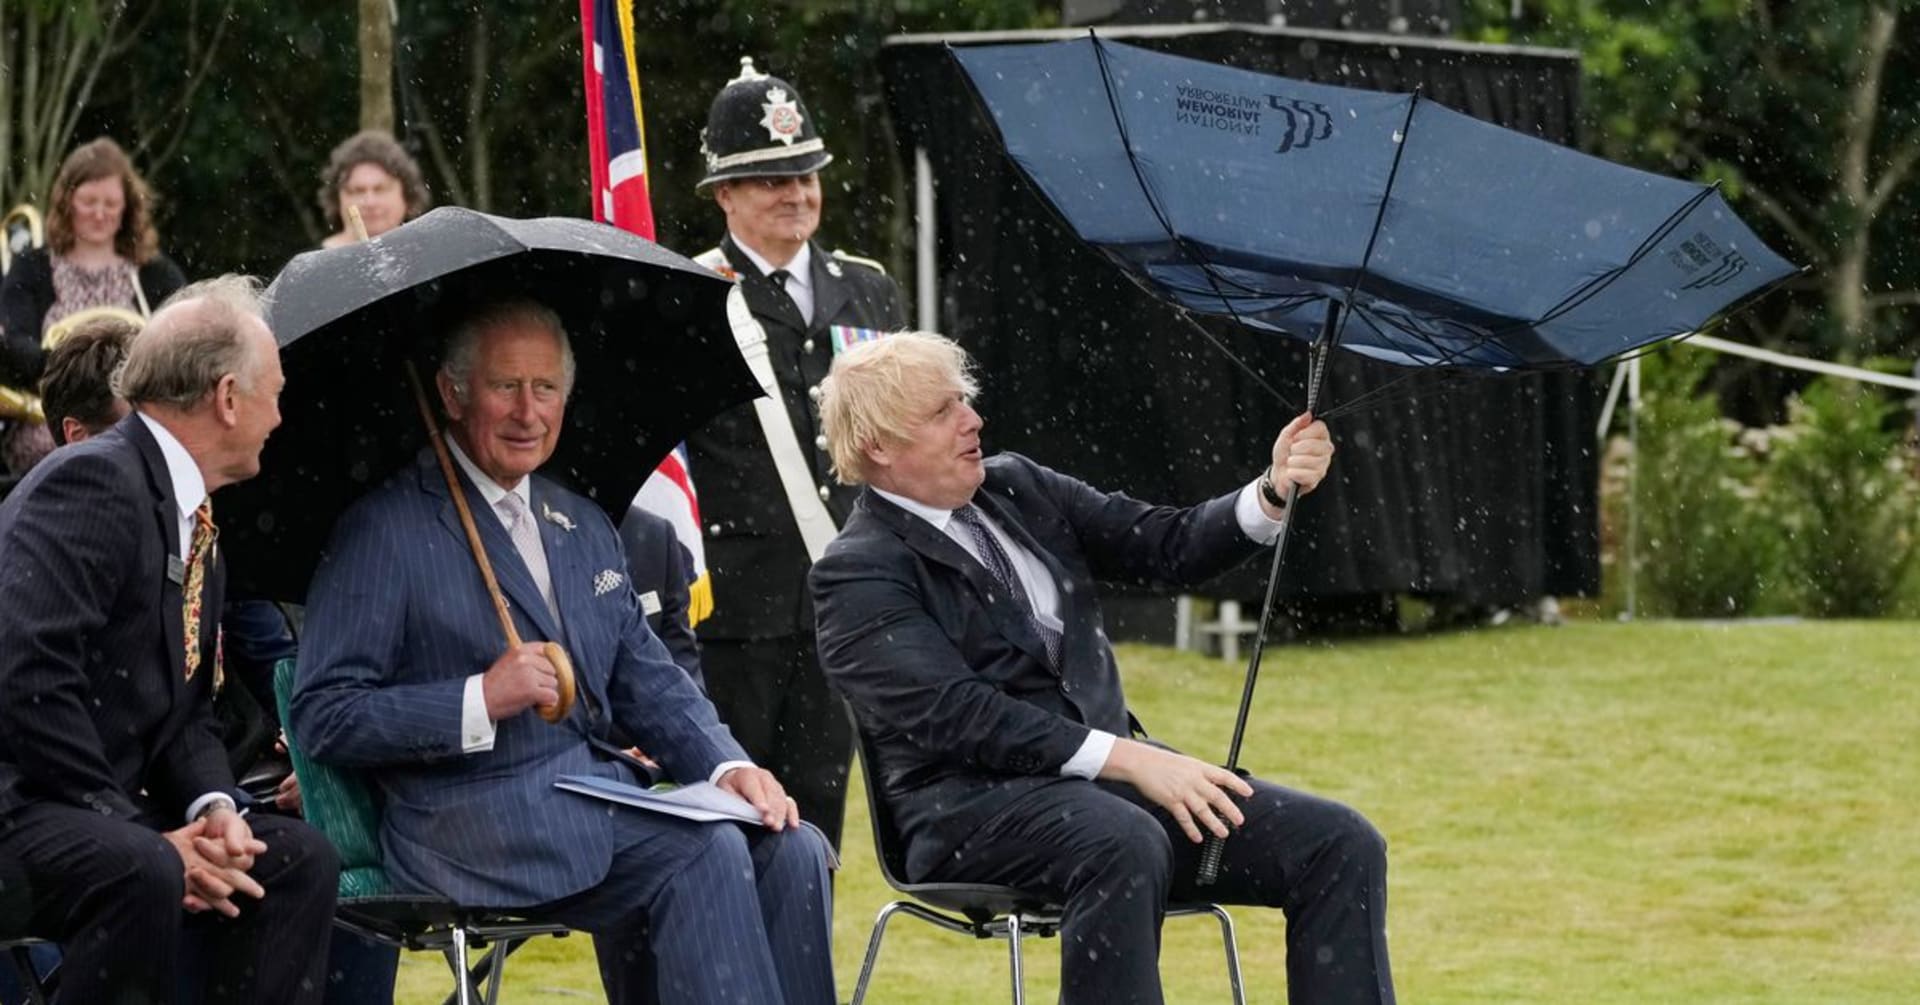 Boris Johnson proslul i některými úsměvnými momenty. Na snímku například zápasí s deštníkem.